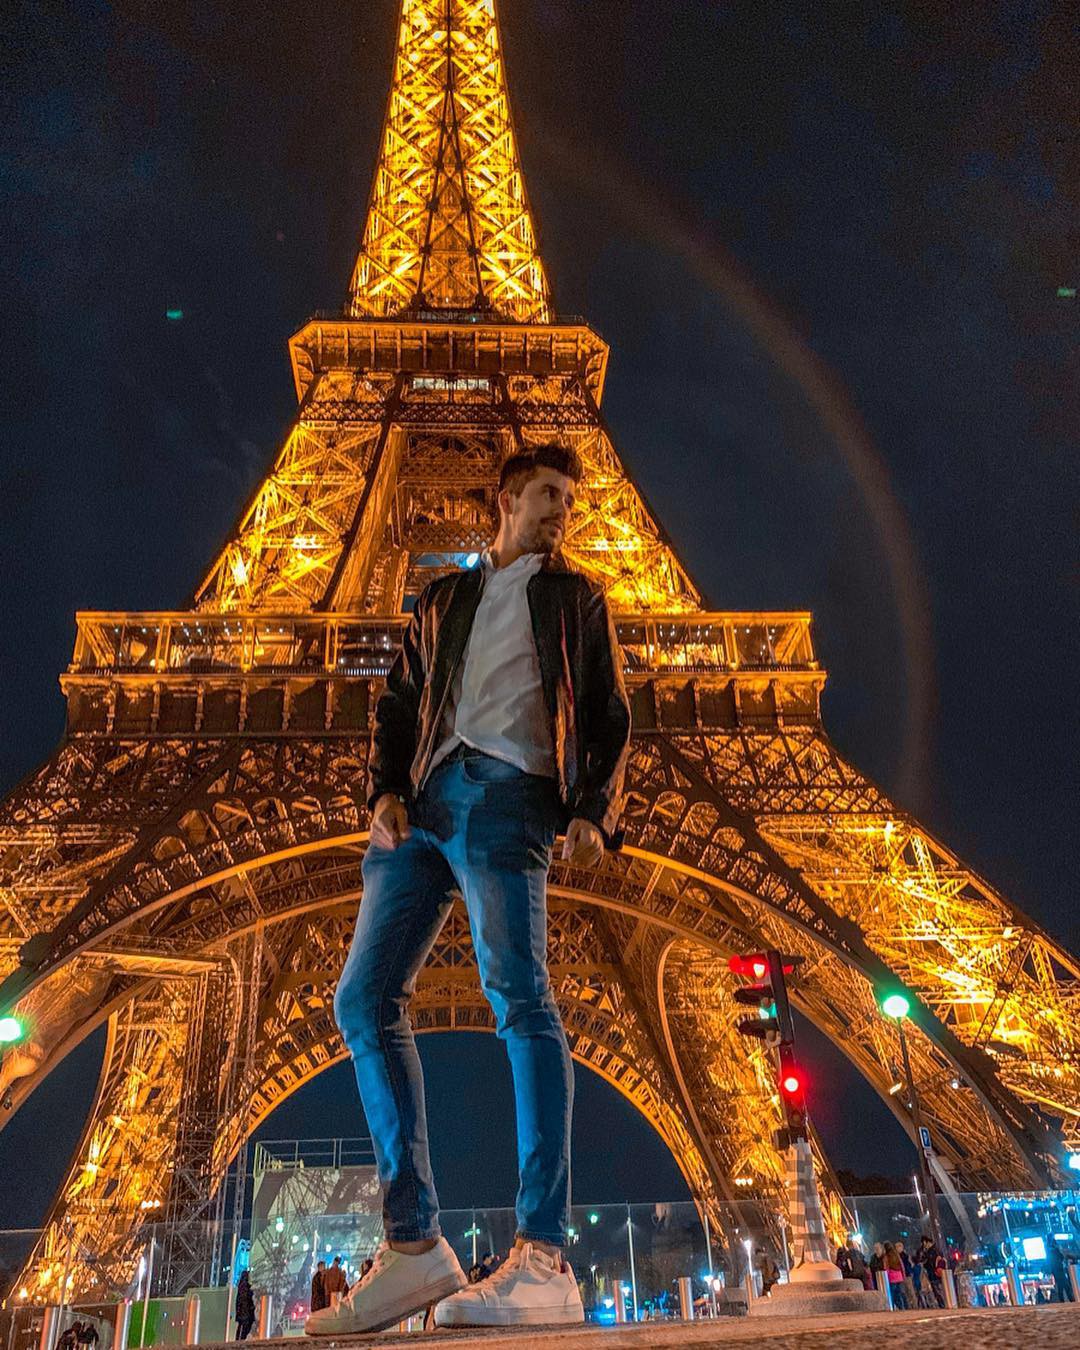 Bạn có thể đã phạm luật nếu chụp ảnh tháp Eiffel buổi tối  Vietnam IP Laws  VLIP  Chuyên Trang Đặc Biệt Về Sở Hữu Trí Tuệ Nhãn hiệu Sáng chế